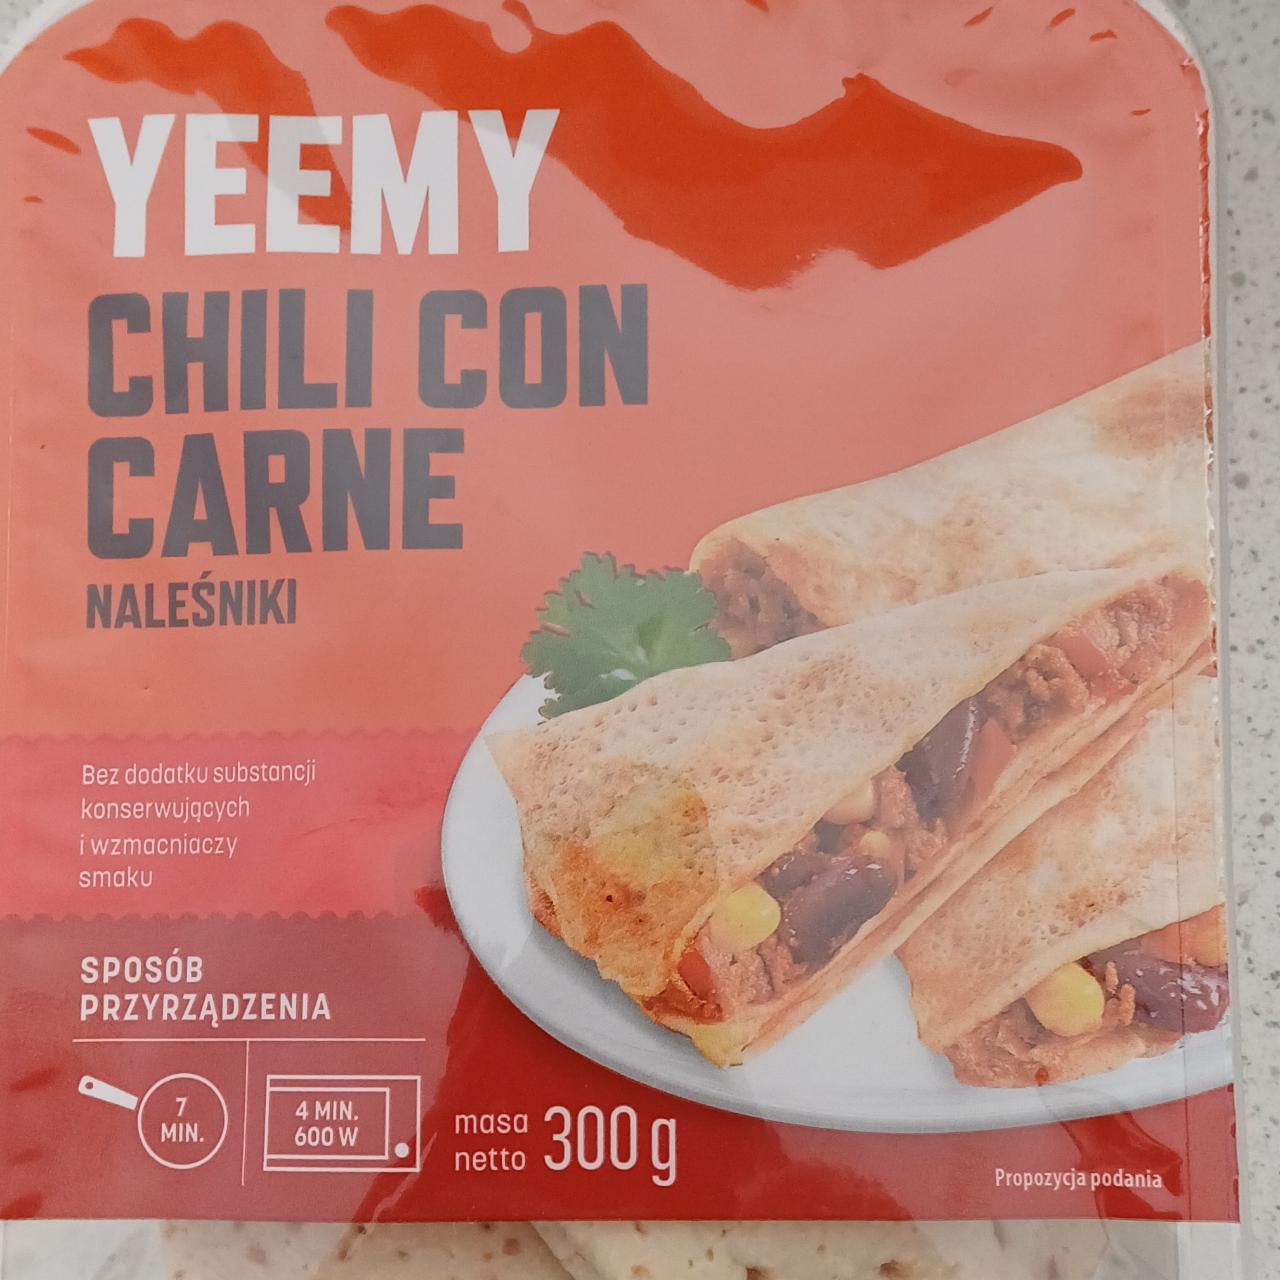 Zdjęcia - Chili con carne Naleśniki Yeemy